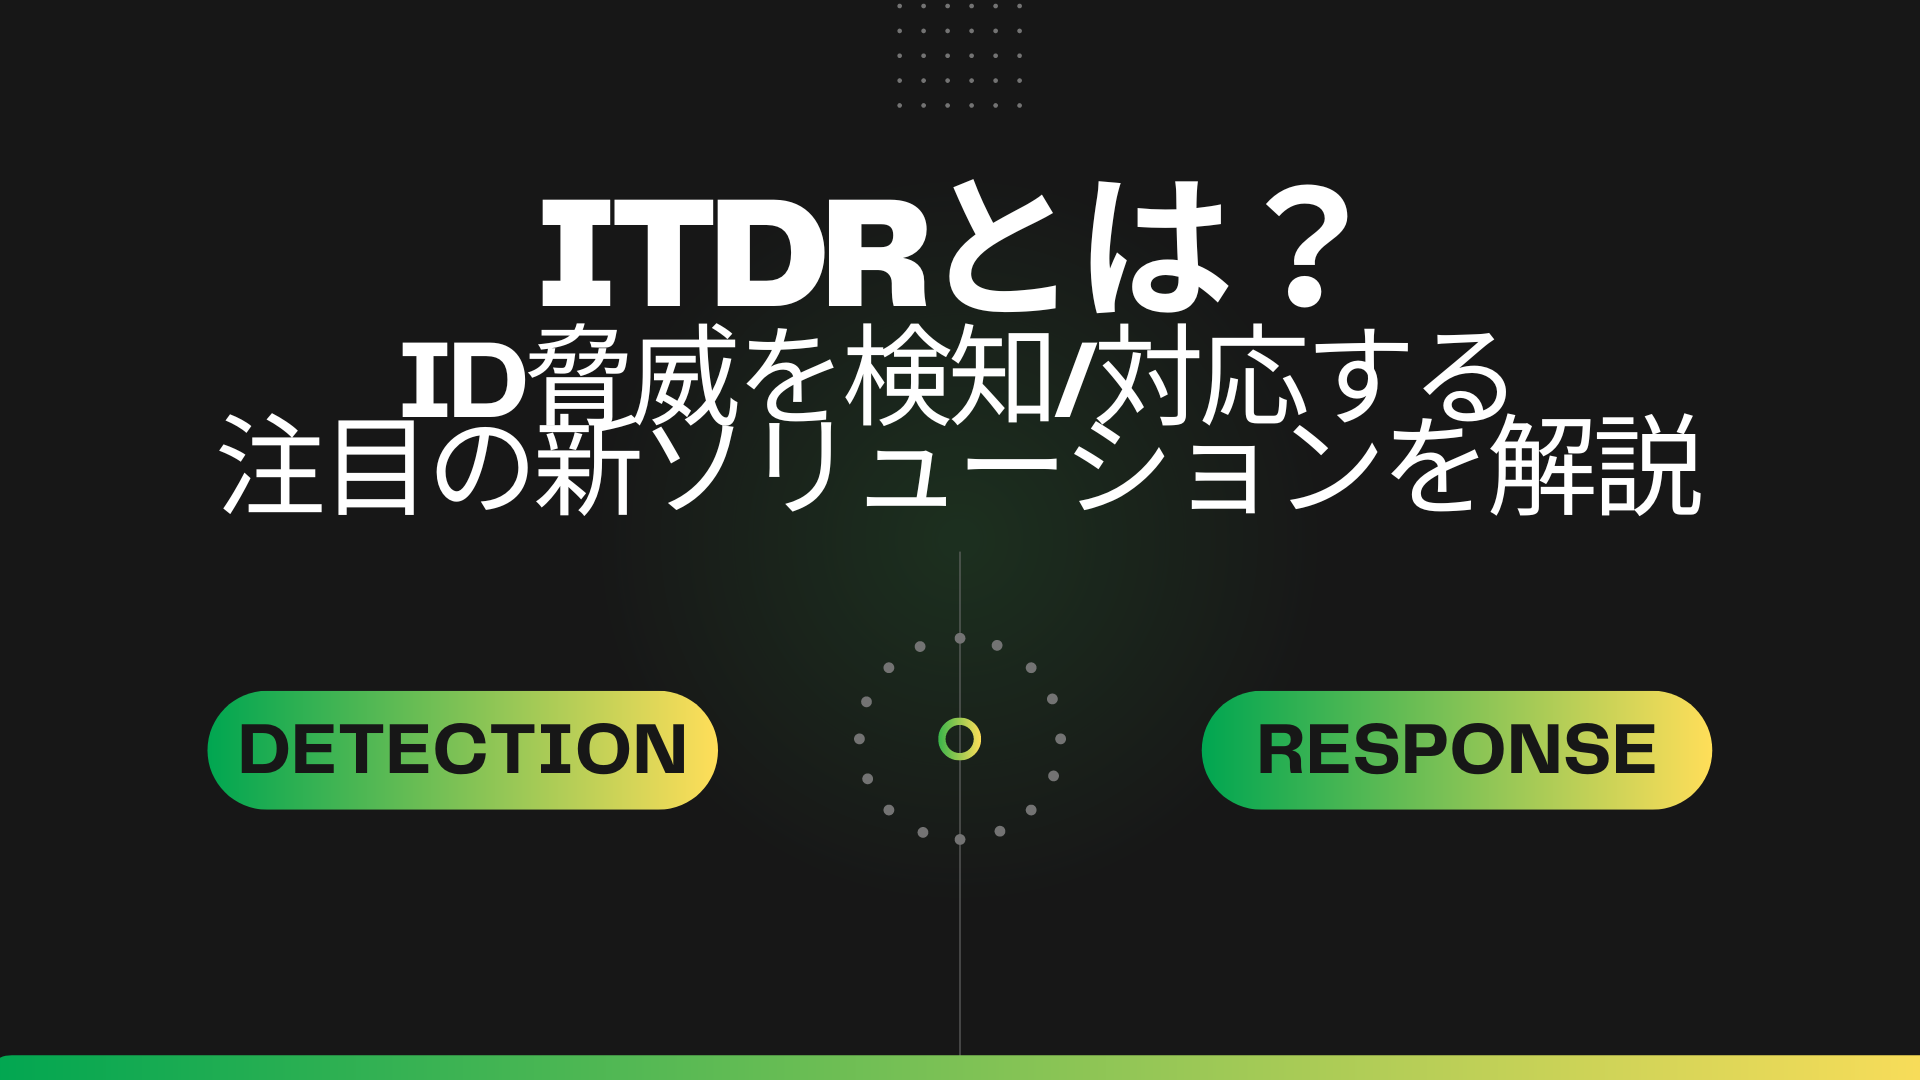 ITDRとは？～ID脅威を検知・対応する注目の新ソリューション～